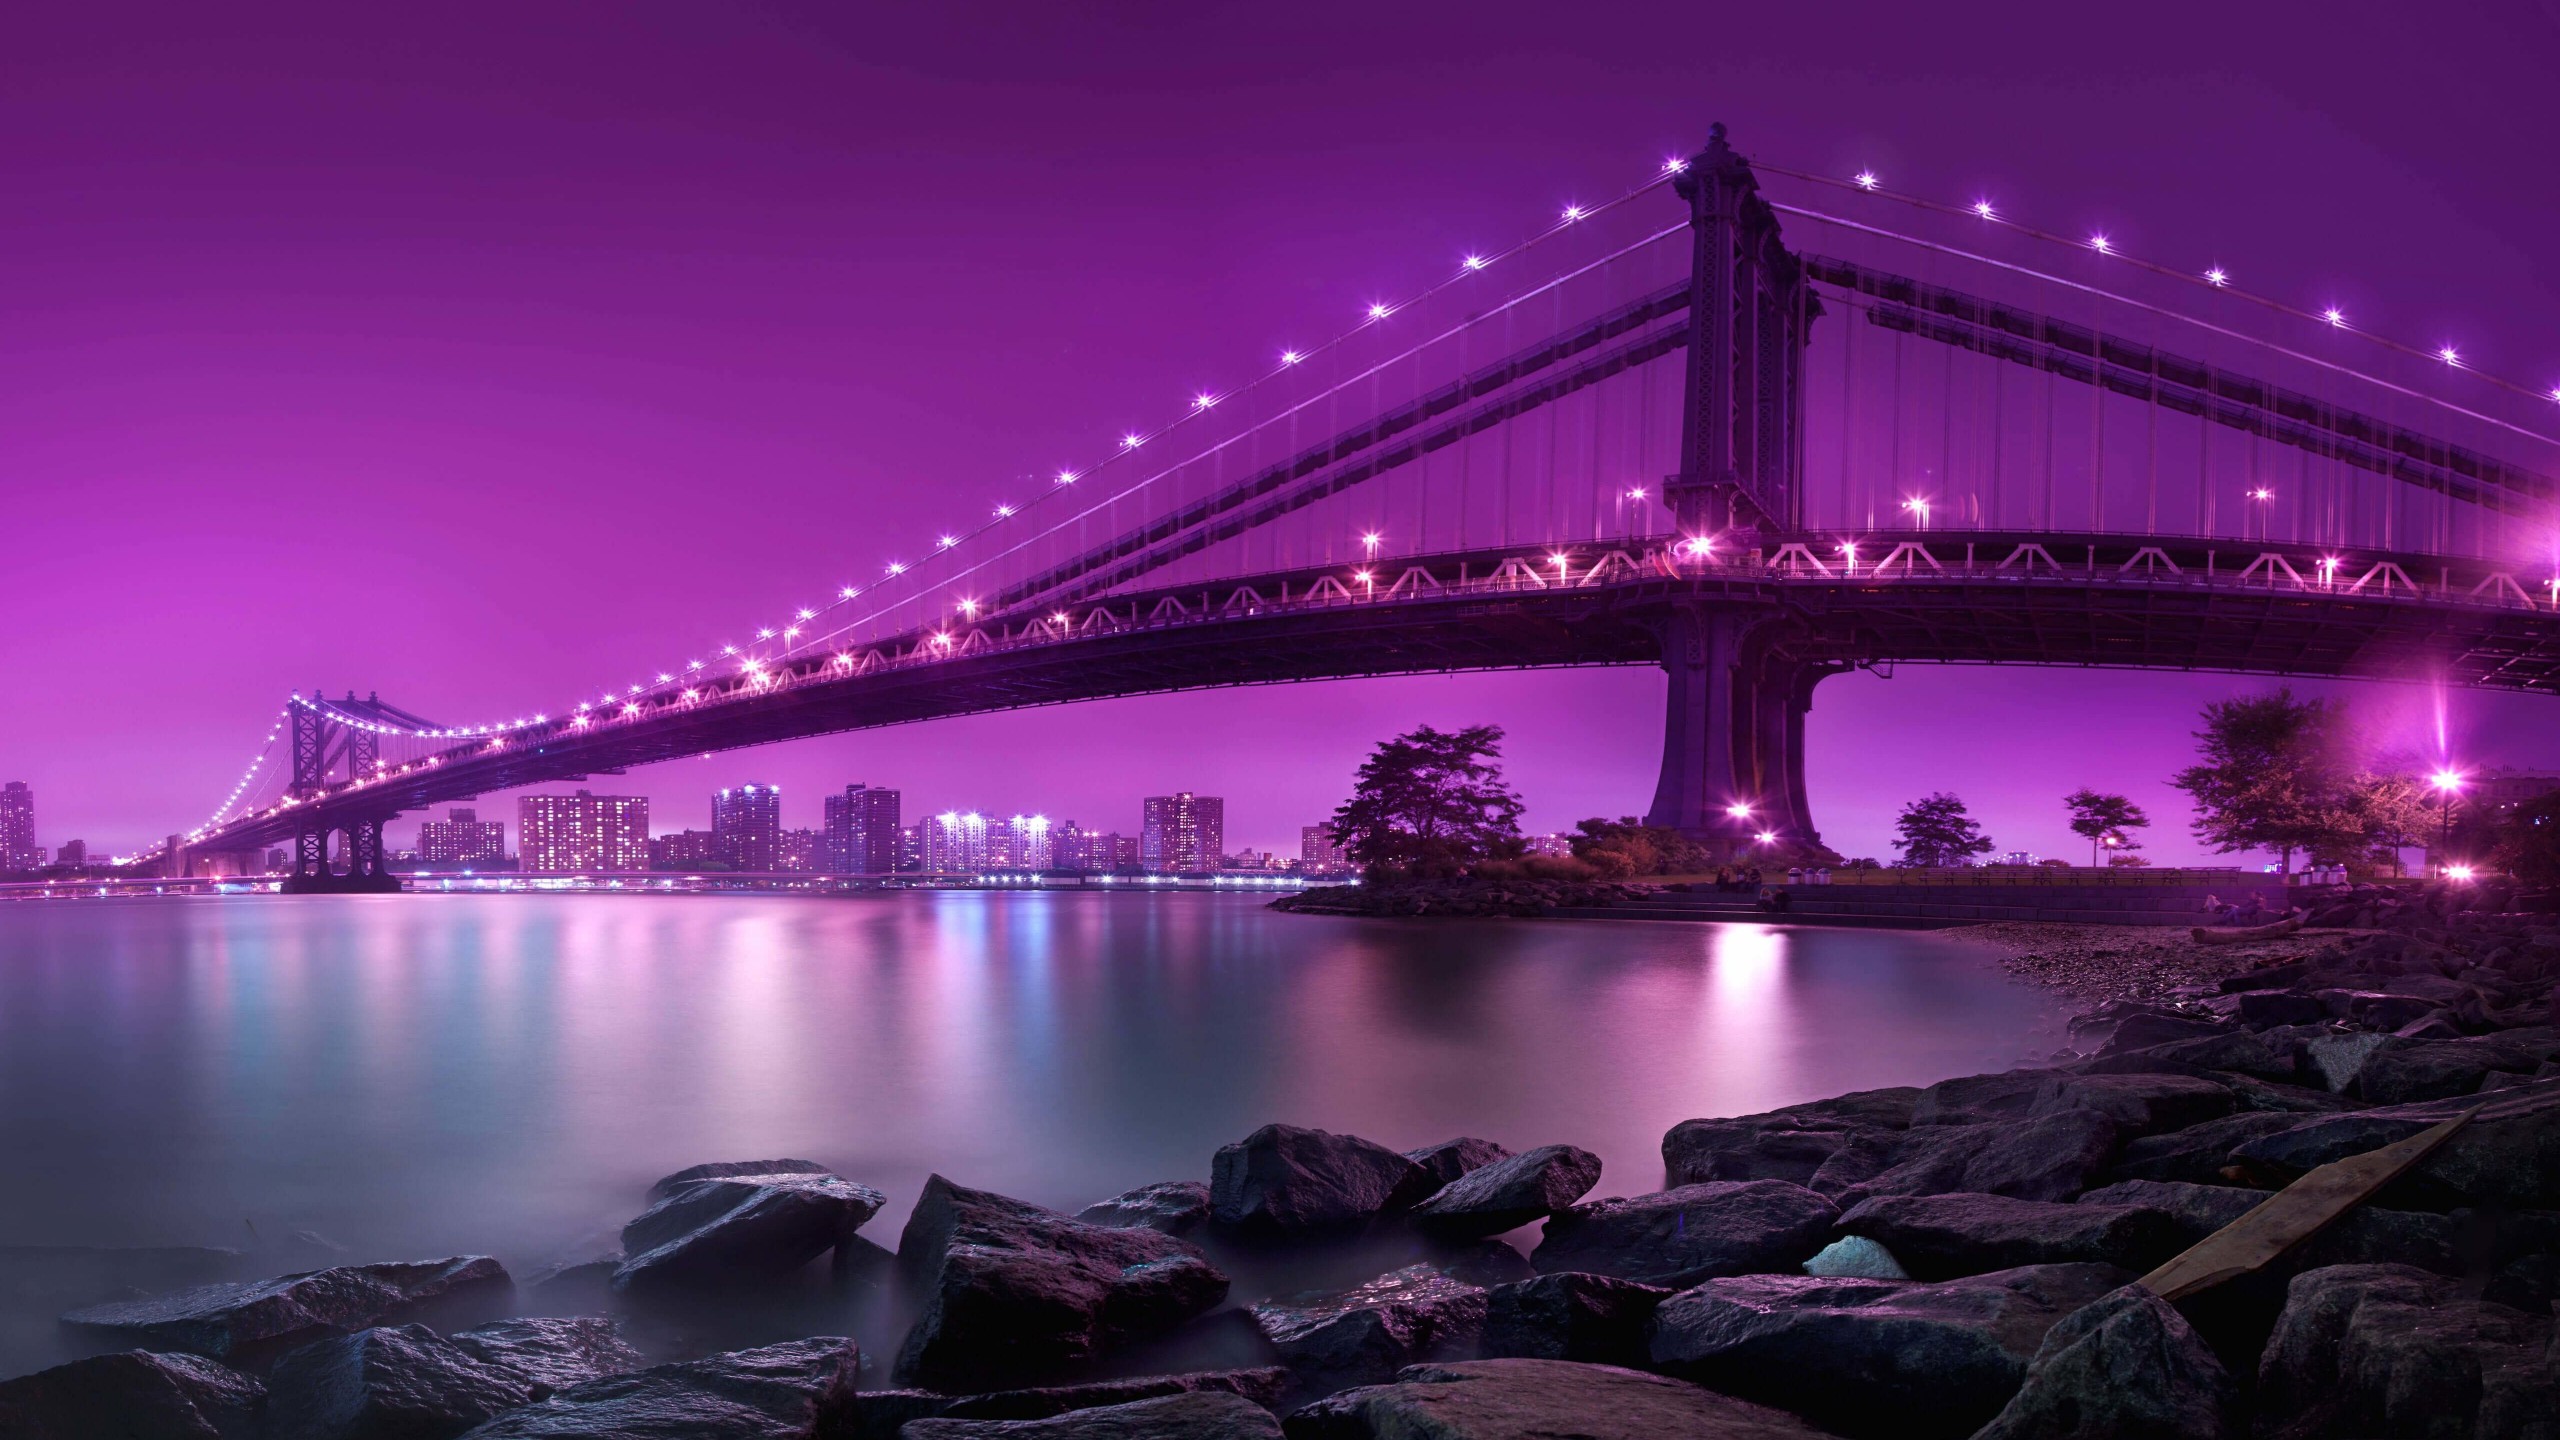 Brooklyn Bridge by night Wallpaper for Desktop 2560x1440